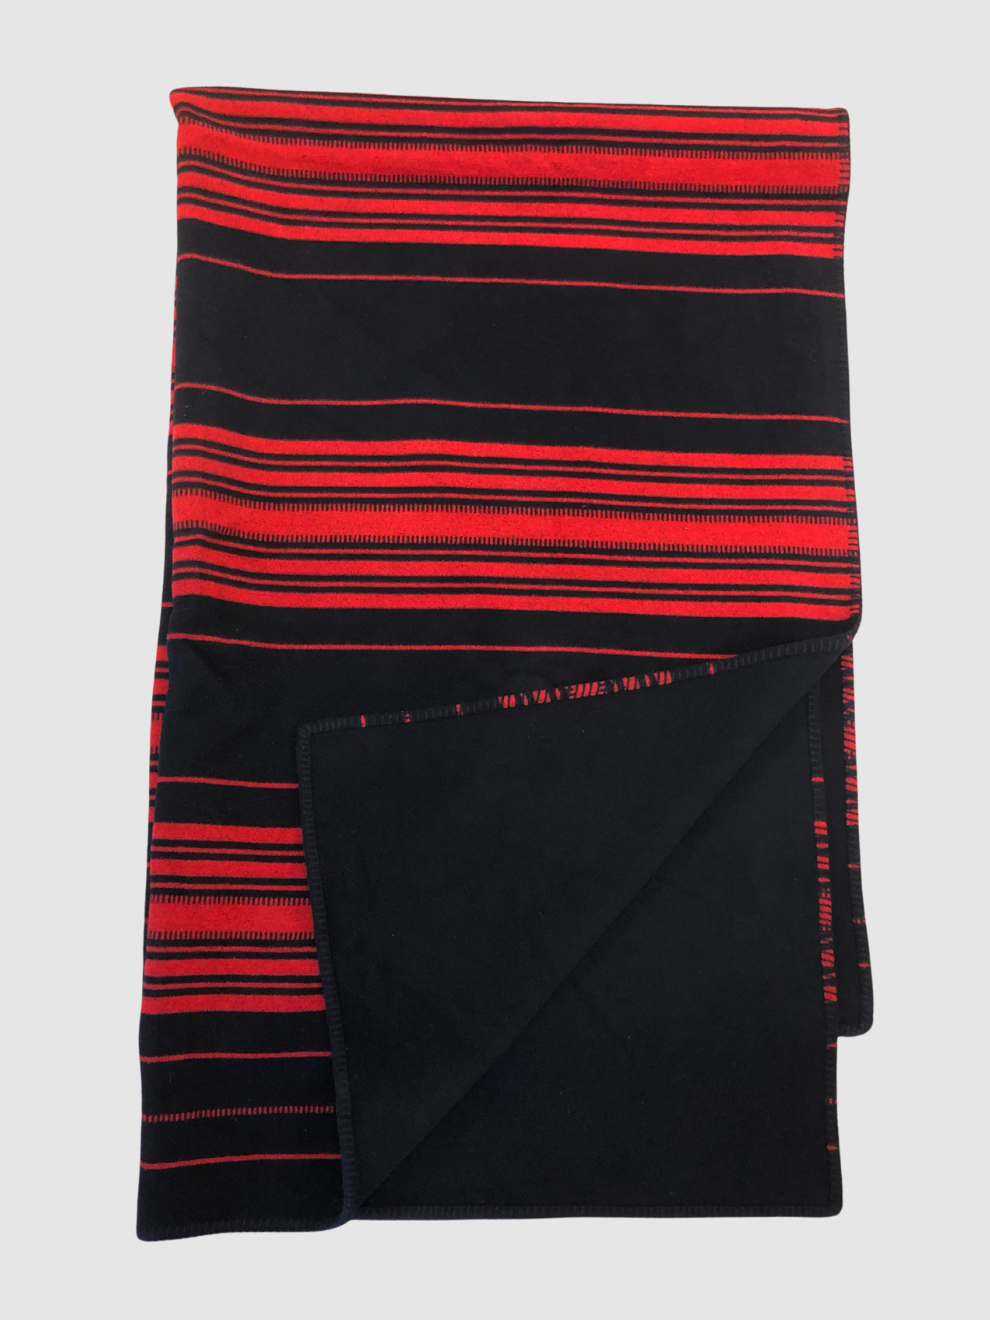 Rot-schwarz gestreifte Woll-Kaschmir-Decke von Loewe